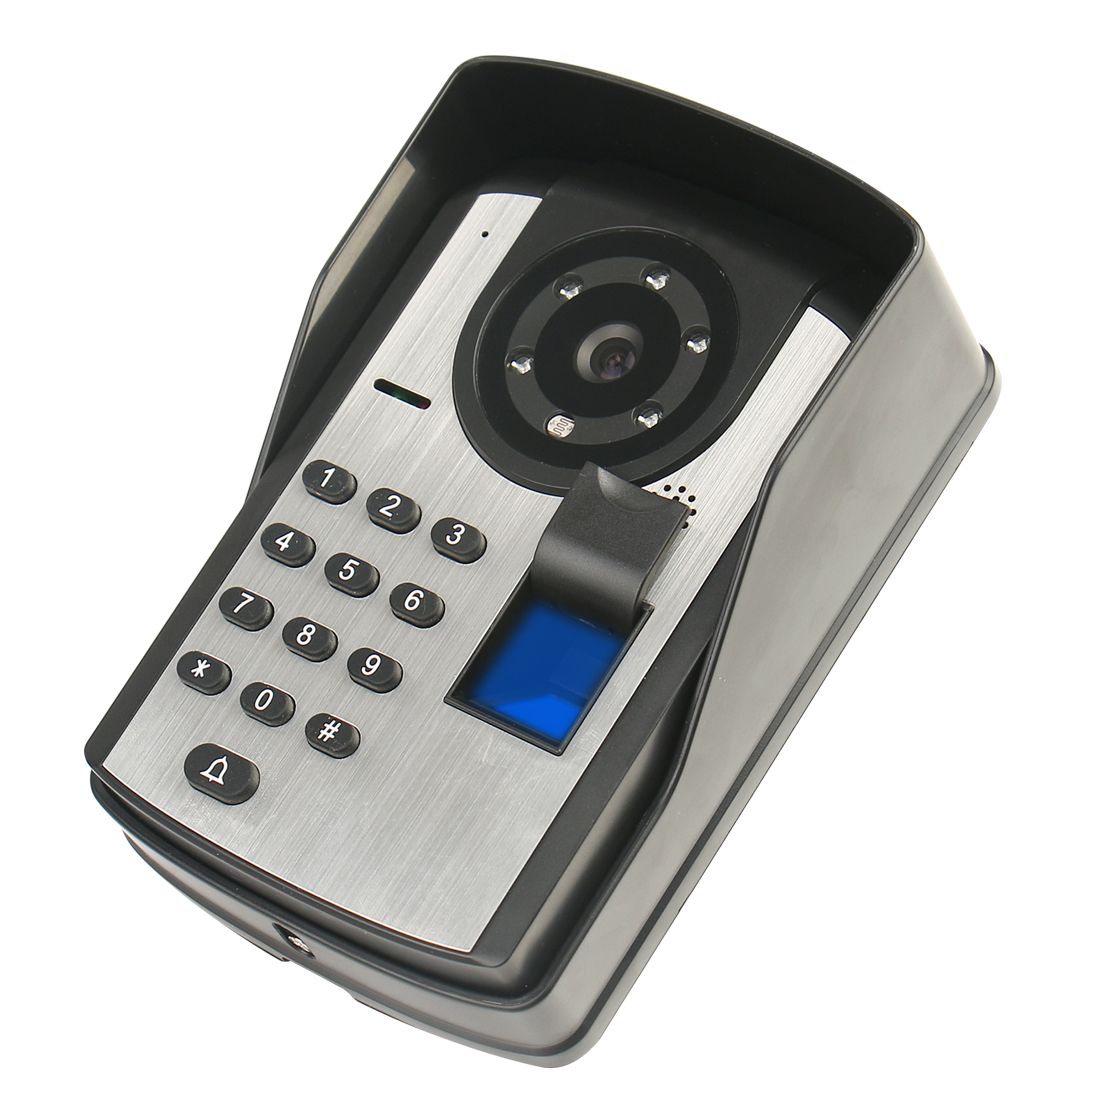 ENNIO-701FD13-7Inch--FingerPrint-PassLock-Wired--Wireless-Wifi-RFID-Password-Video-Door-Phone-Doorbe-1757316